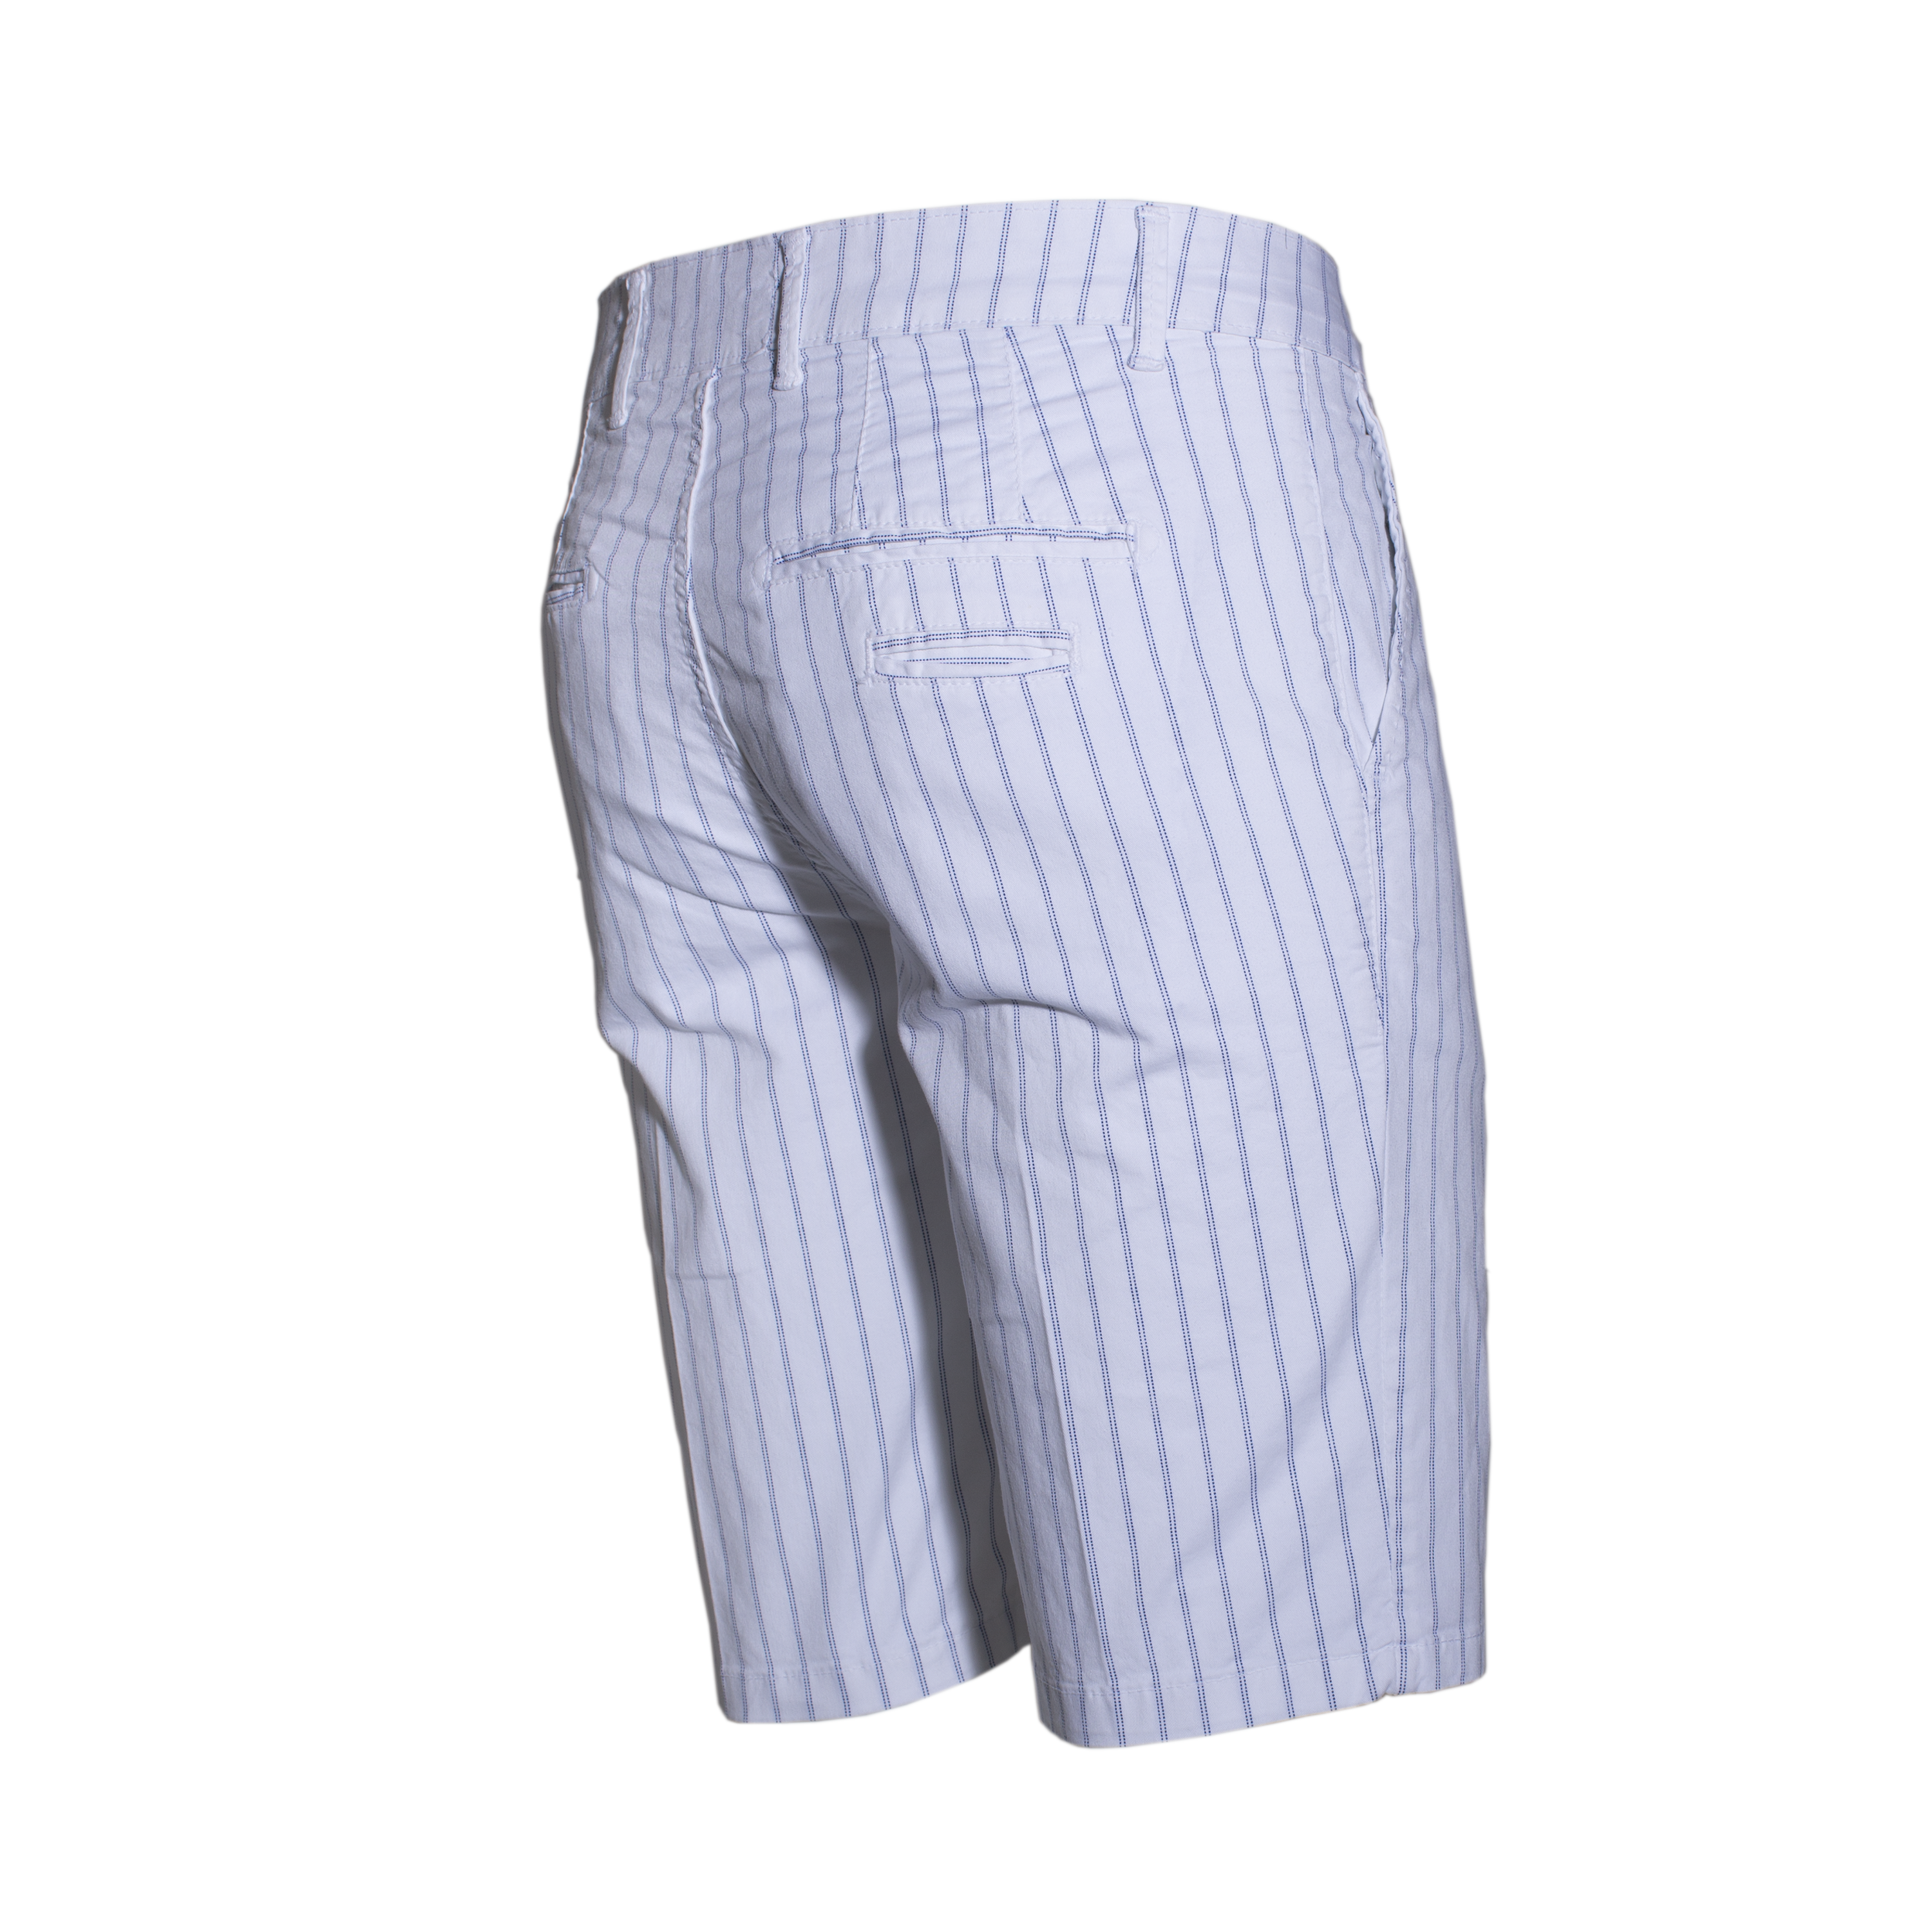 Bermuda Uomo Pantaloncini in Cotone Bianco Rigato